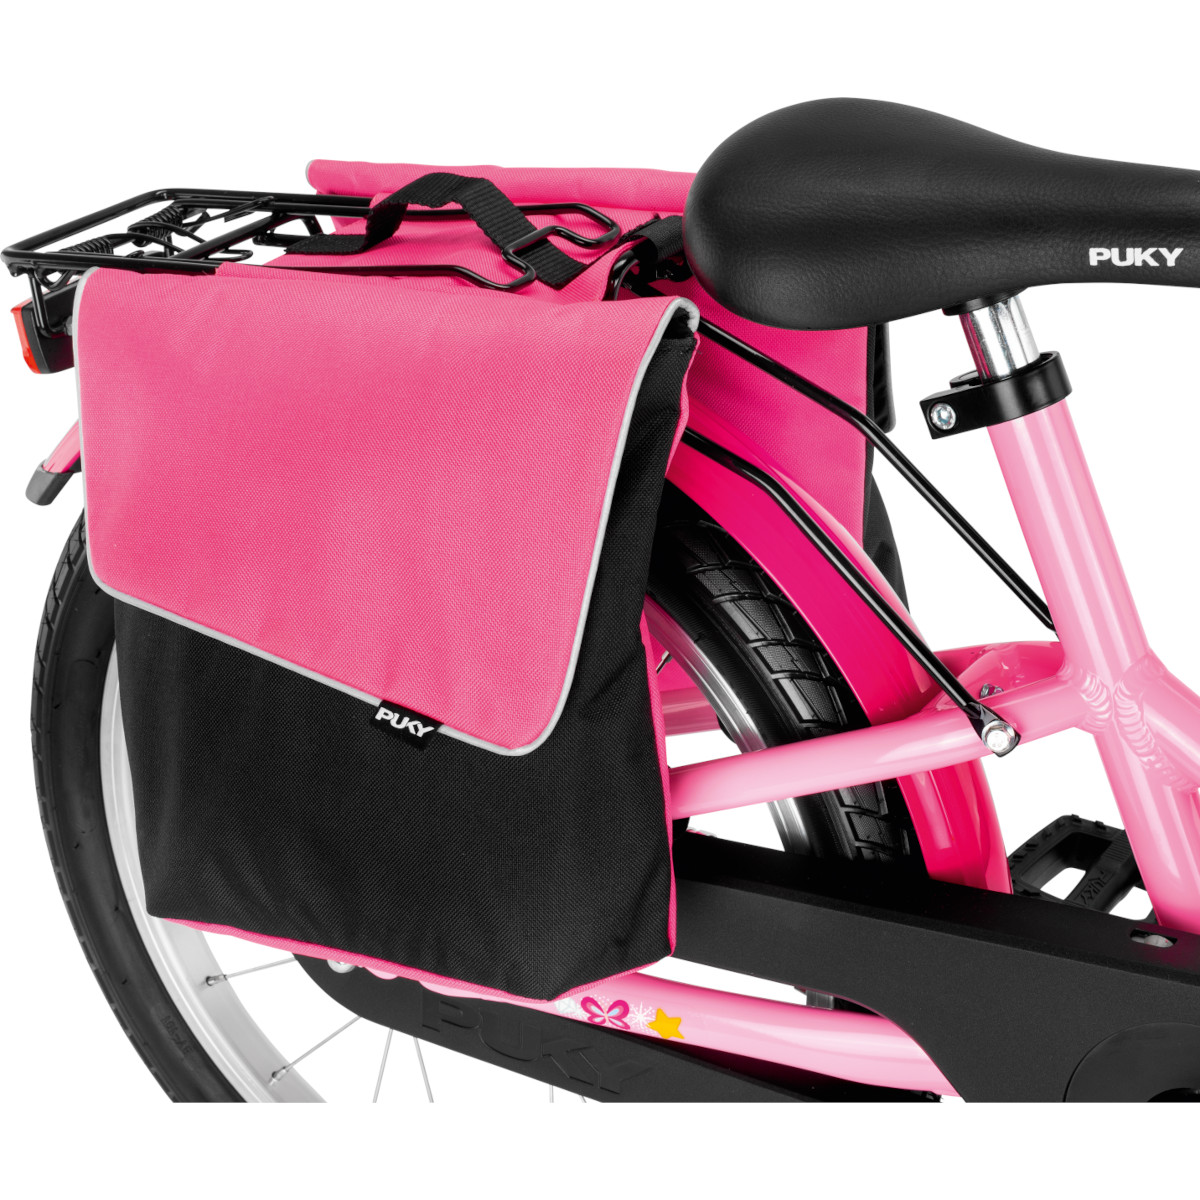 Produktbild von Puky DT 3 Doppeltasche für Gepäckträger - pink